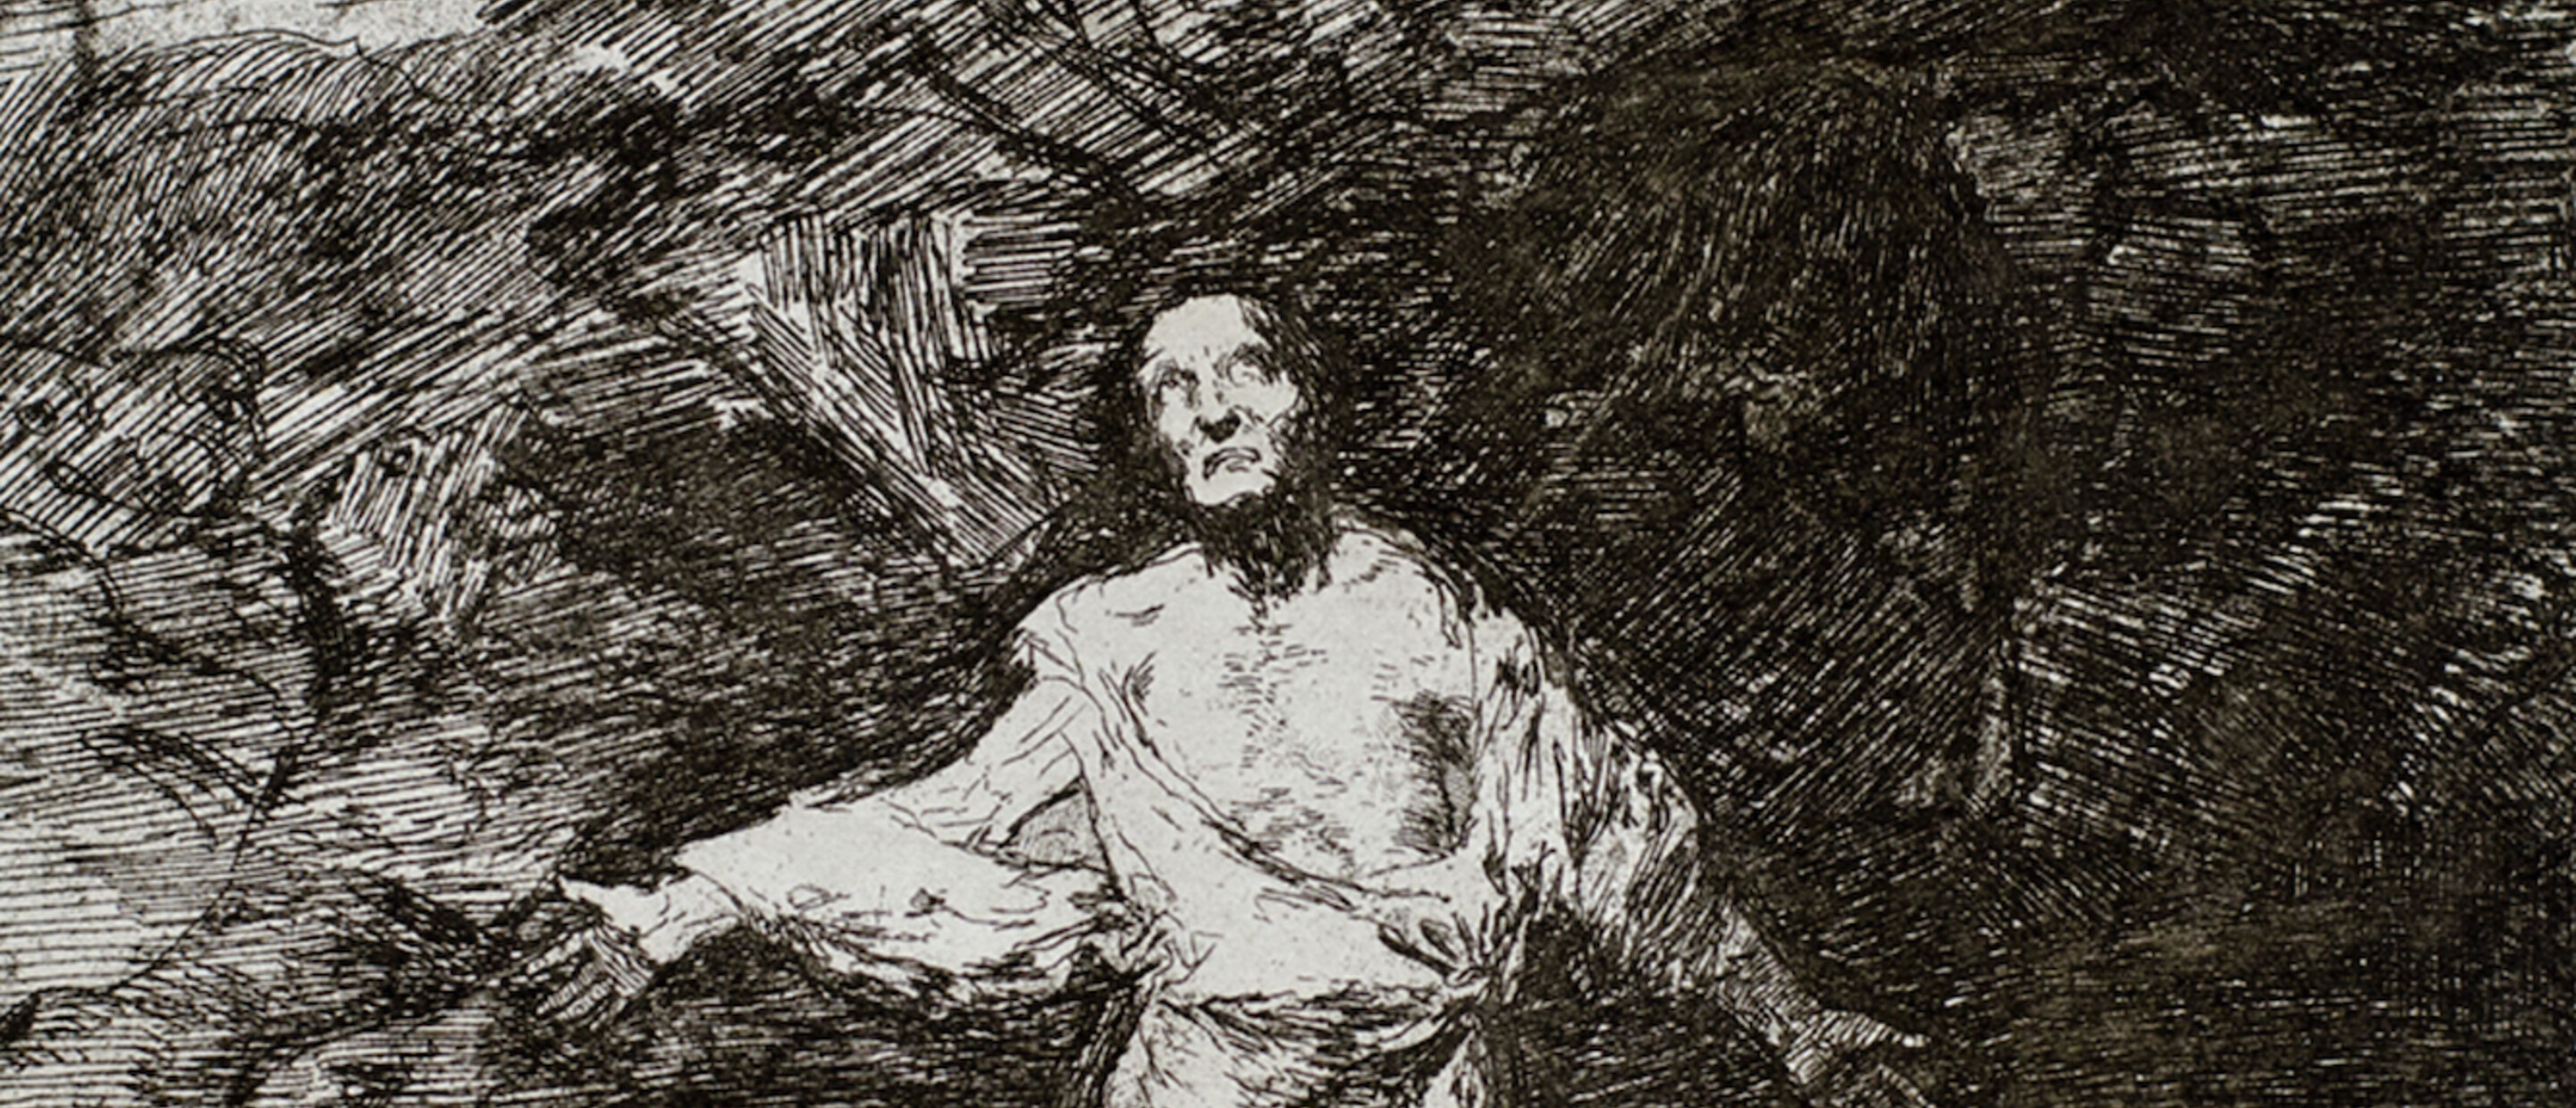 figure kneeling down against dark background